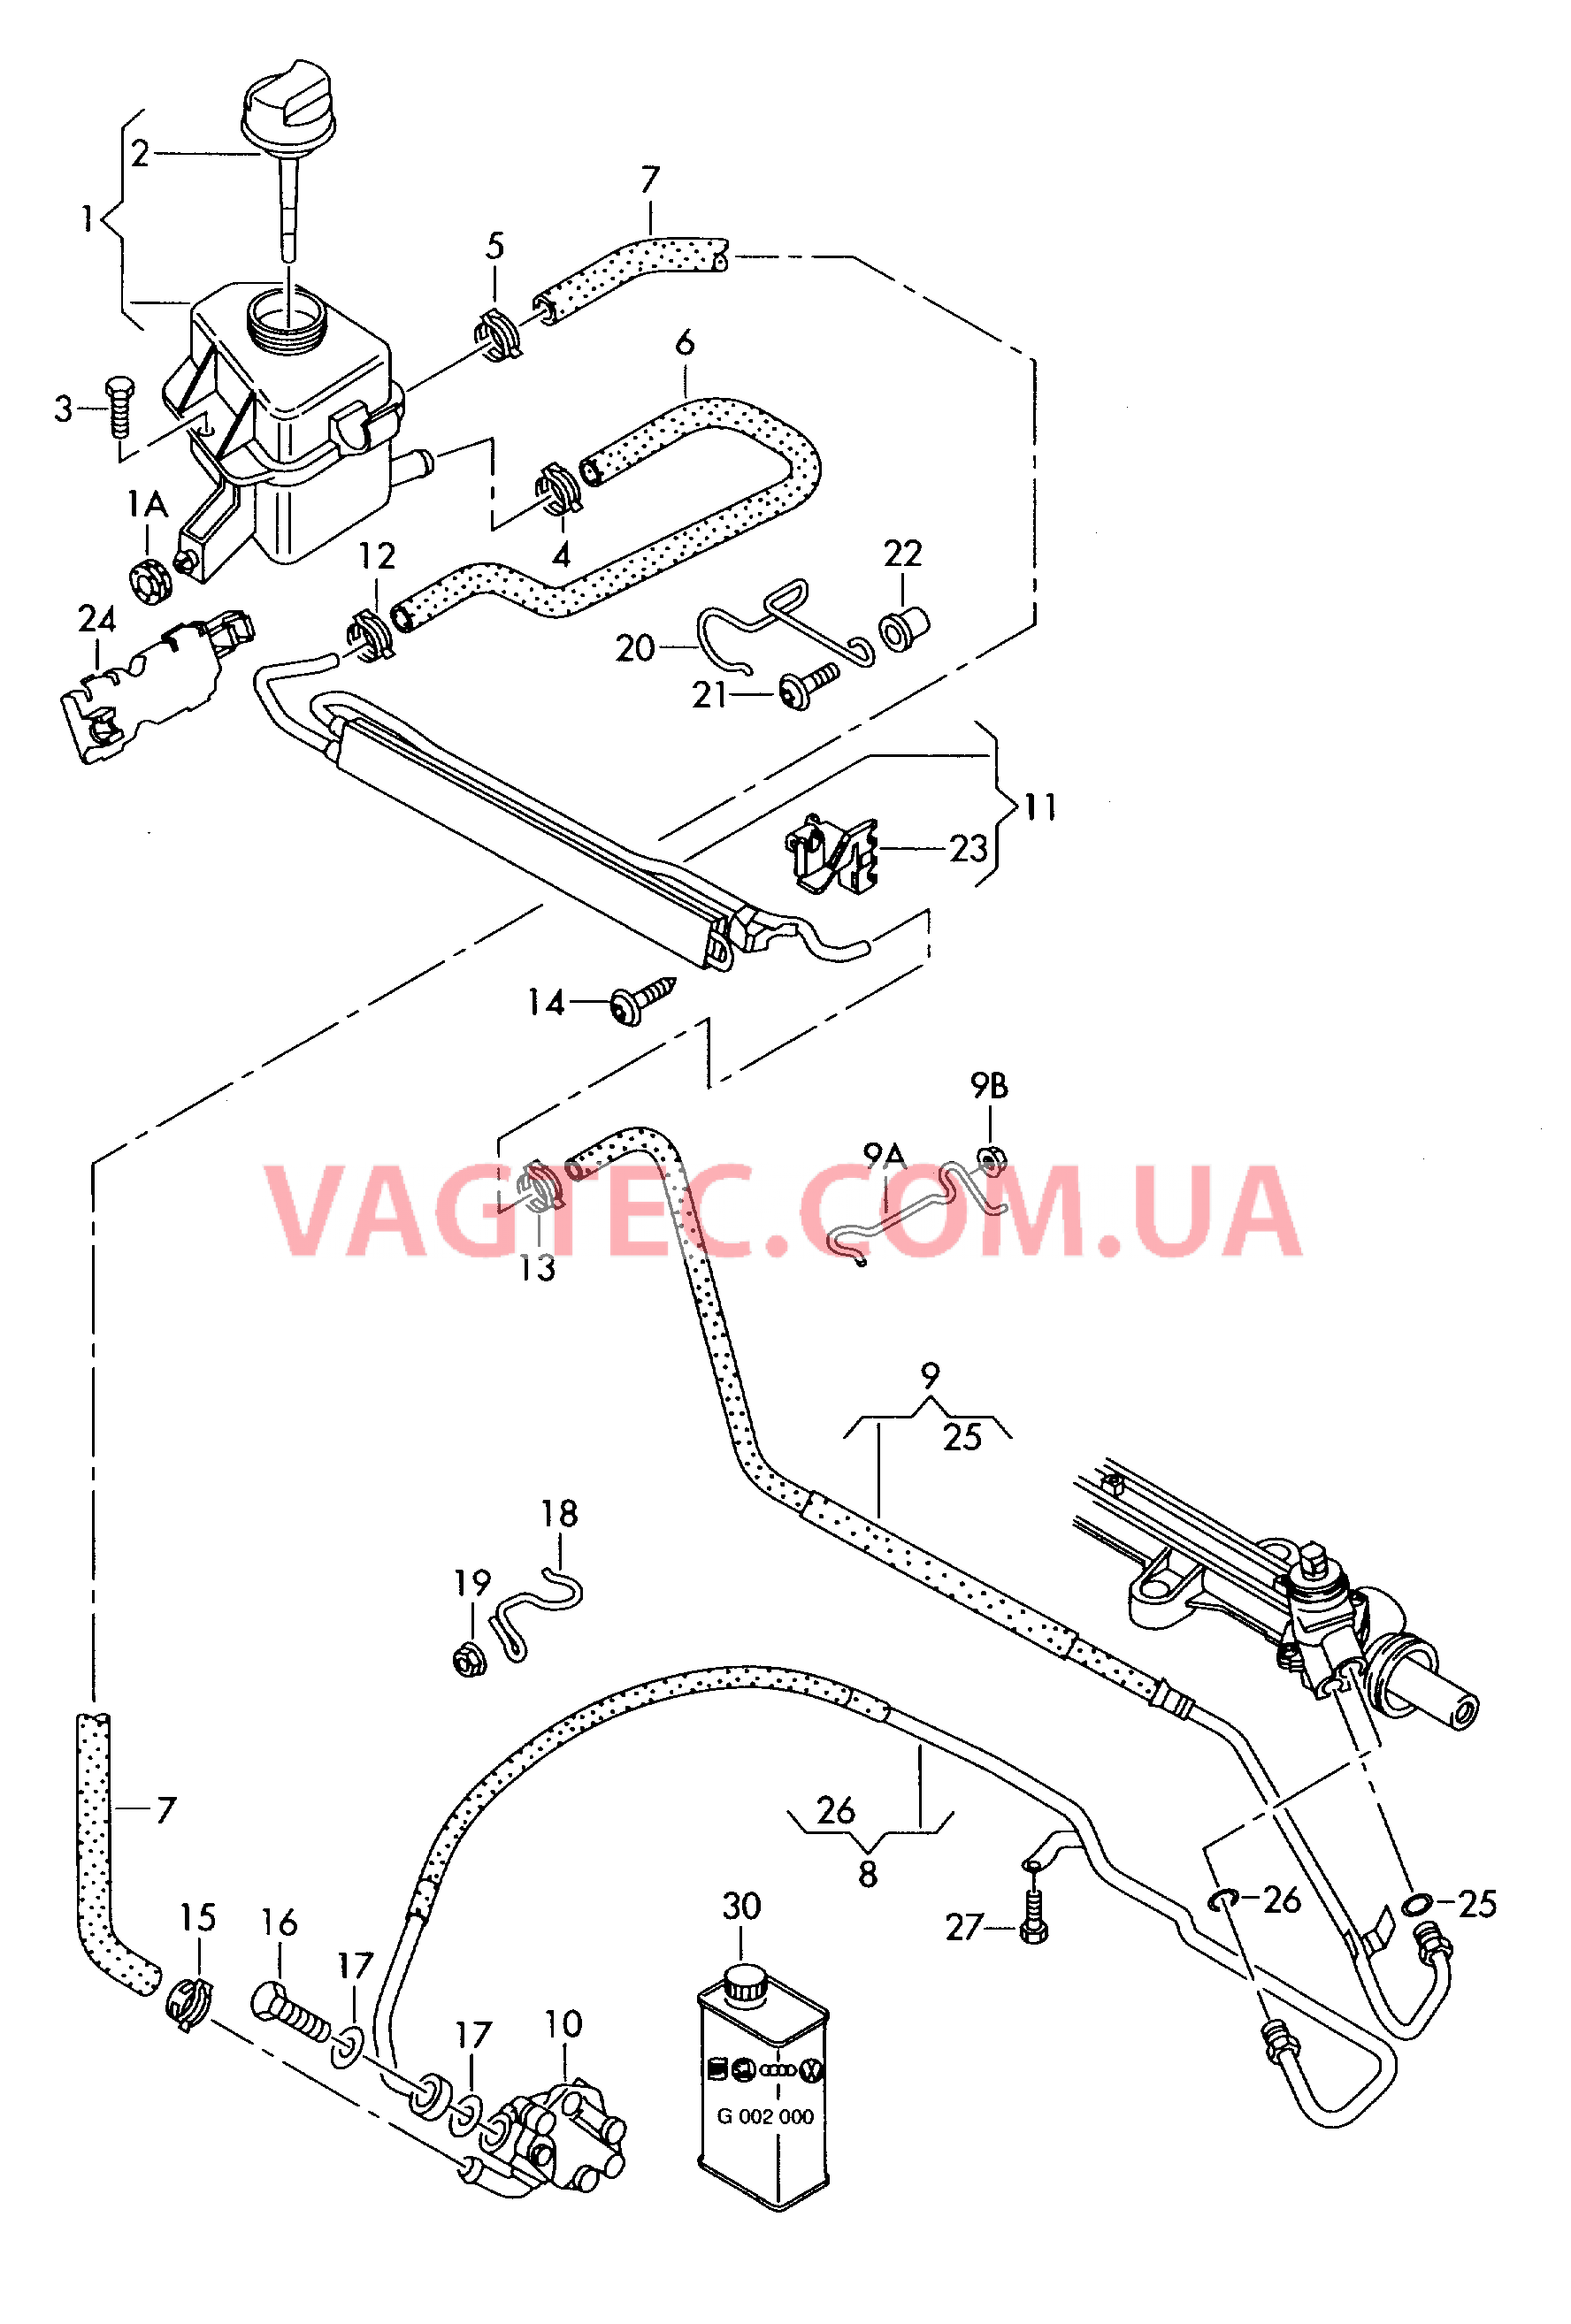 Масляный бачок с соединительными деталями, шлангами  для ГУРа  для VOLKSWAGEN Transporter 2005